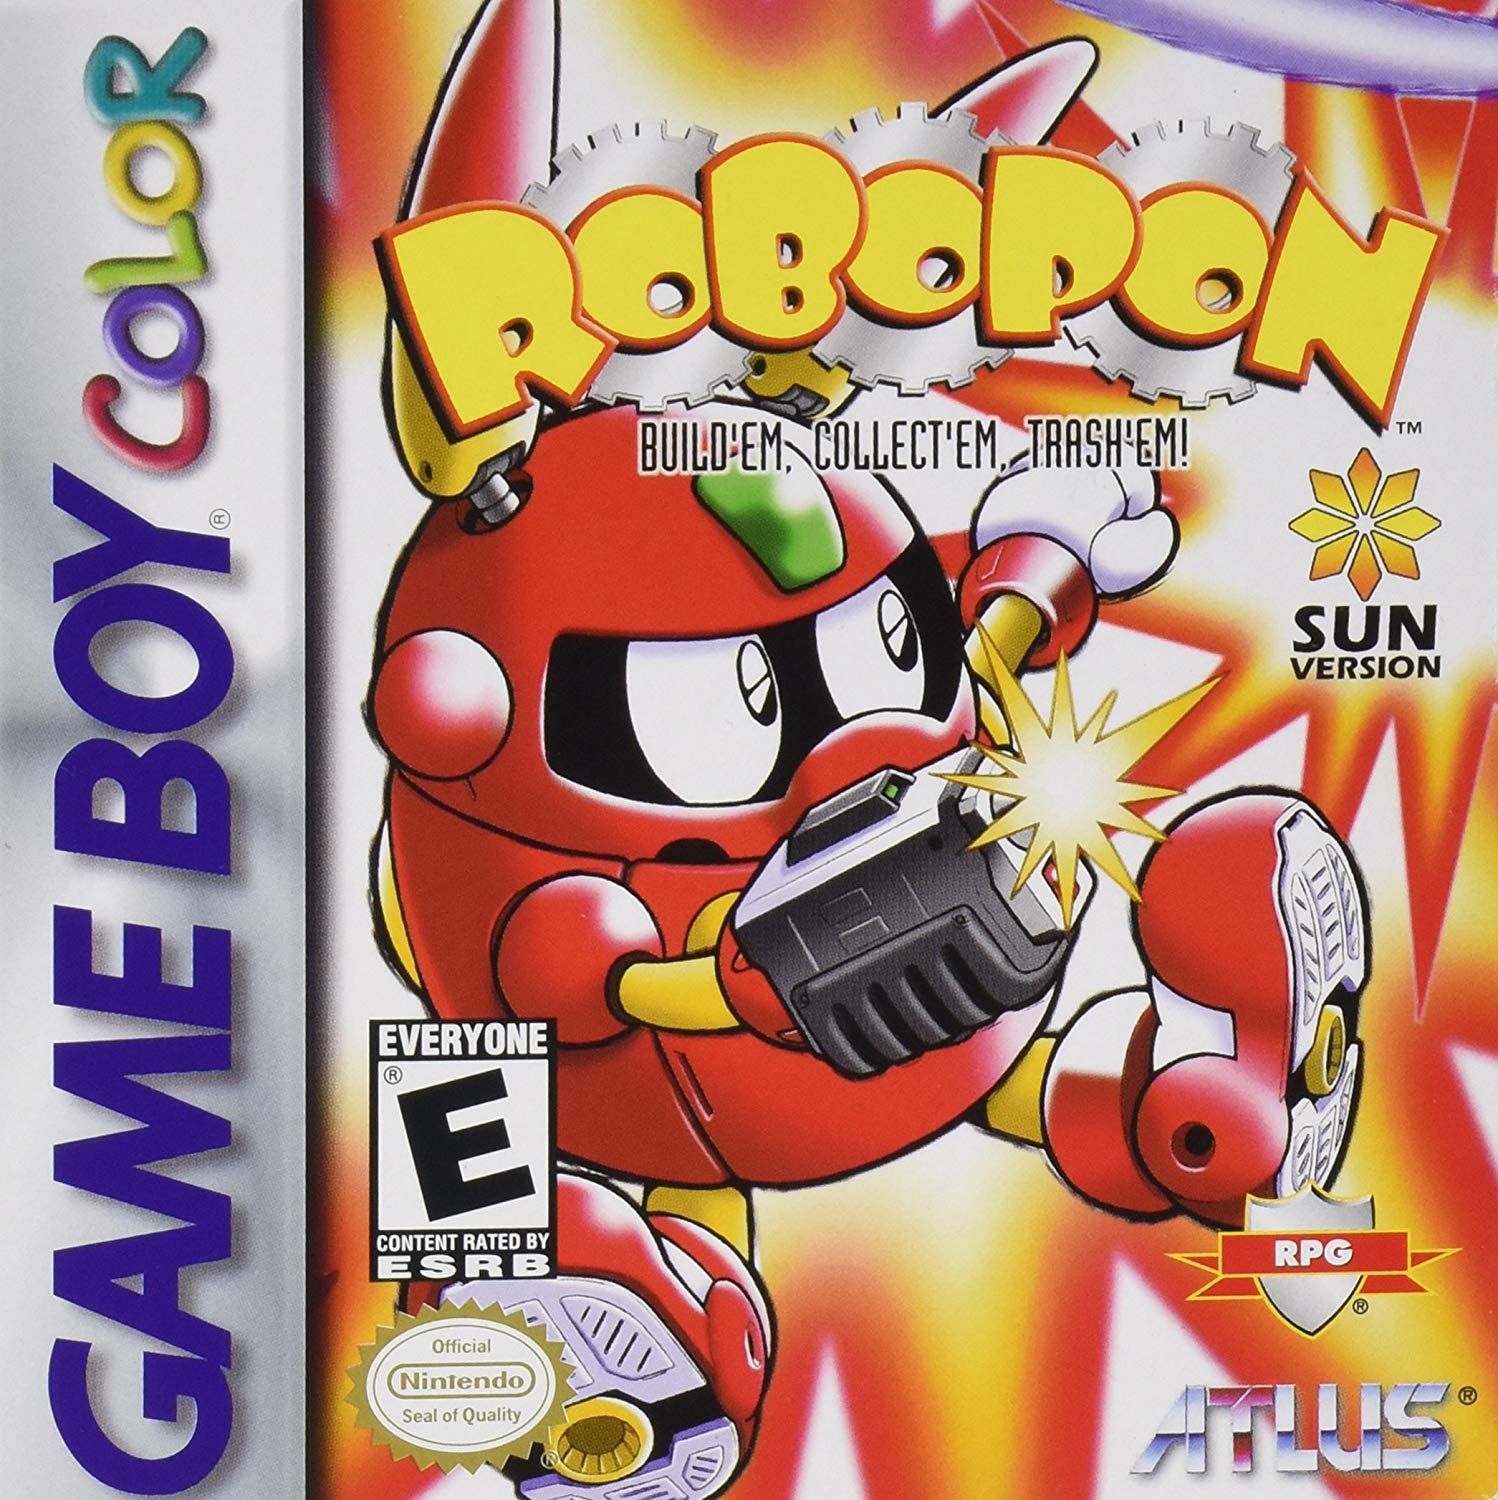 robopon box art for the game boy color